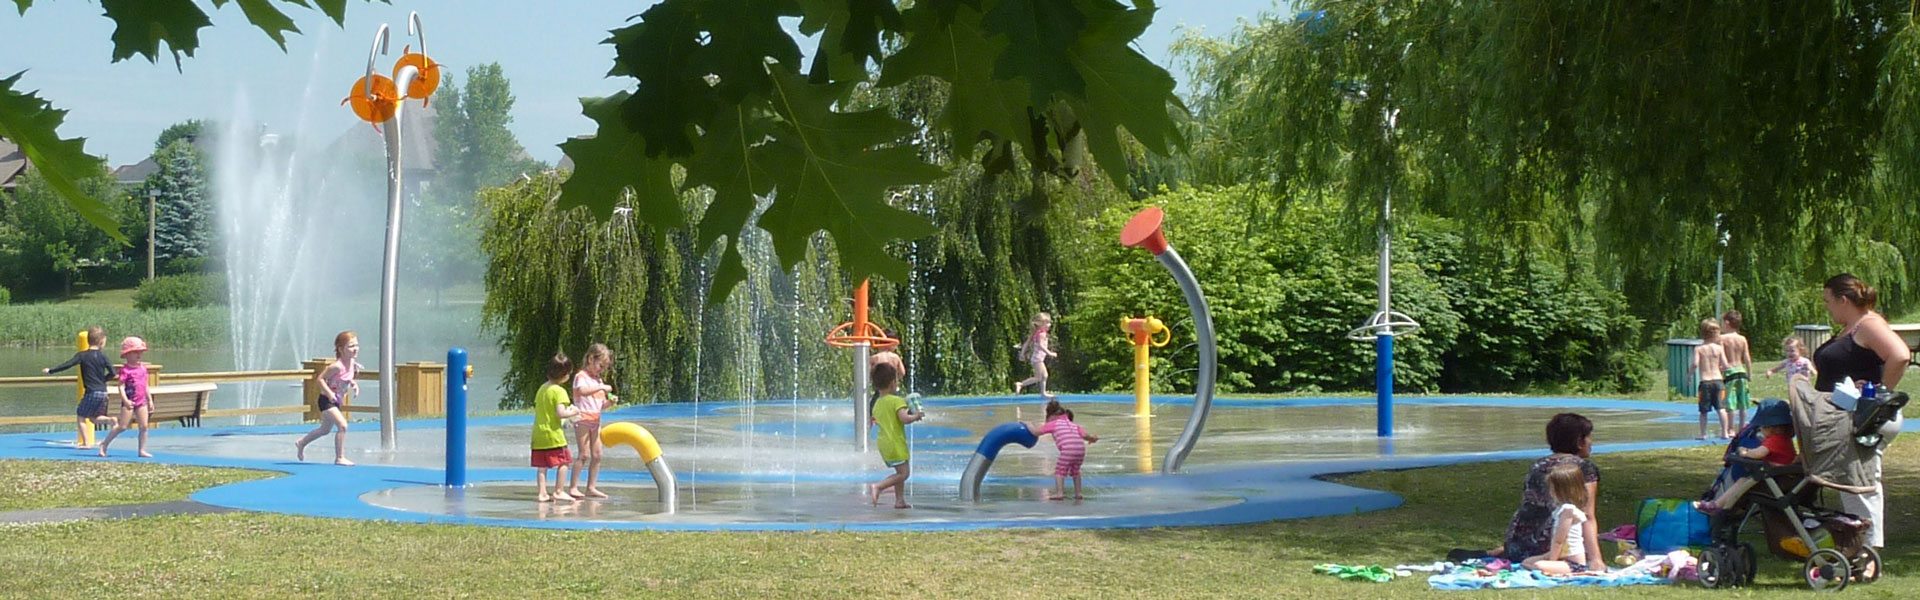 Enfants jouant dans les jeux d'eau